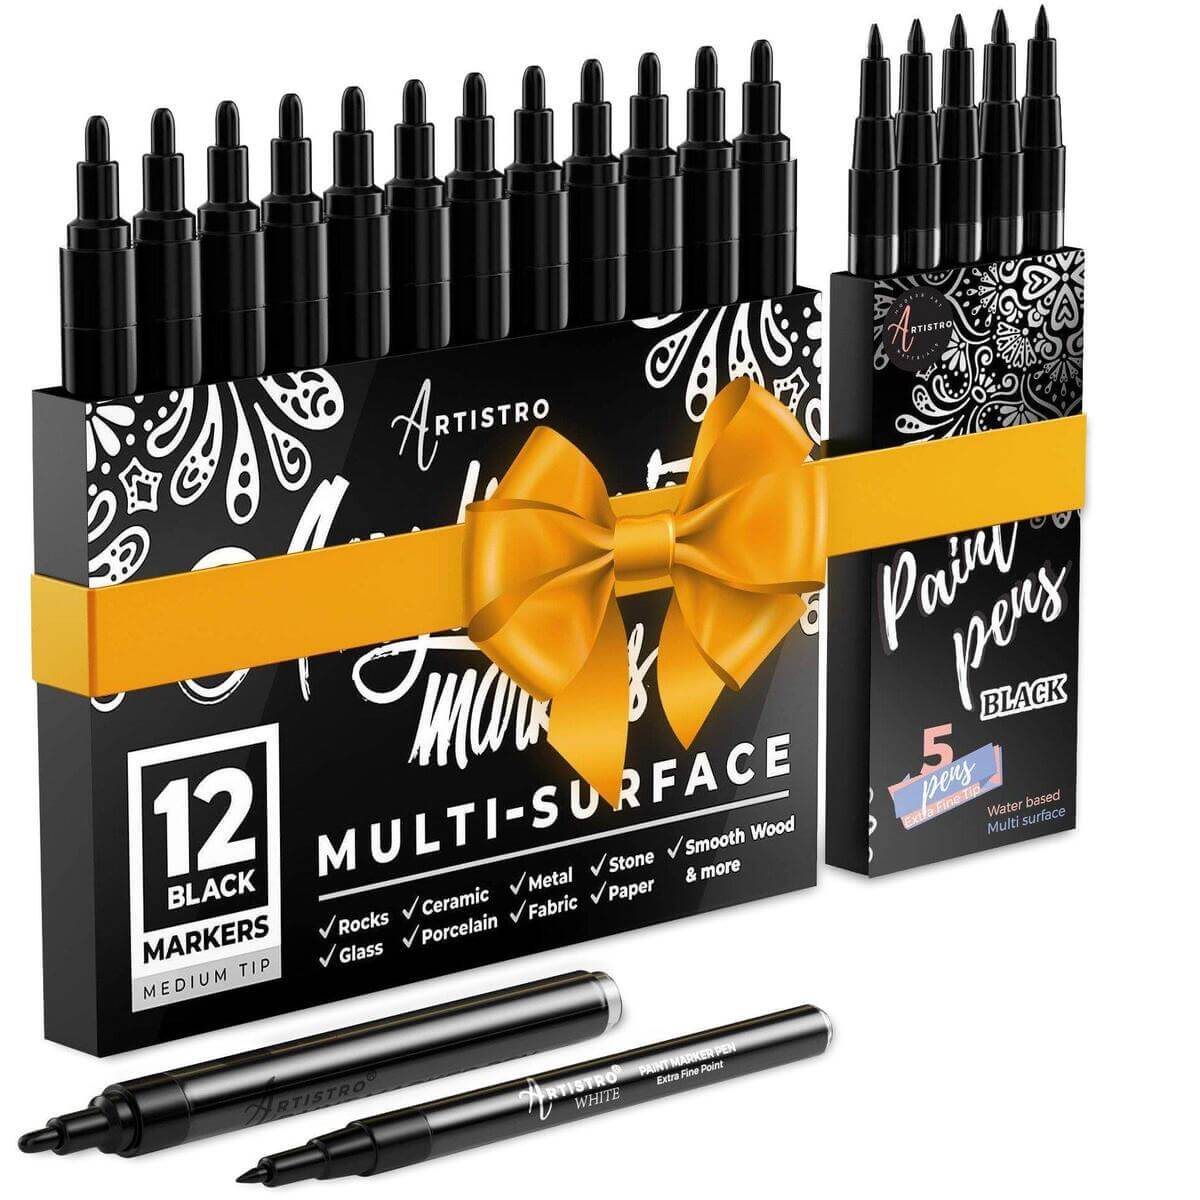 Extra Fine Tip black paint pen - Set of 5 black paint pens